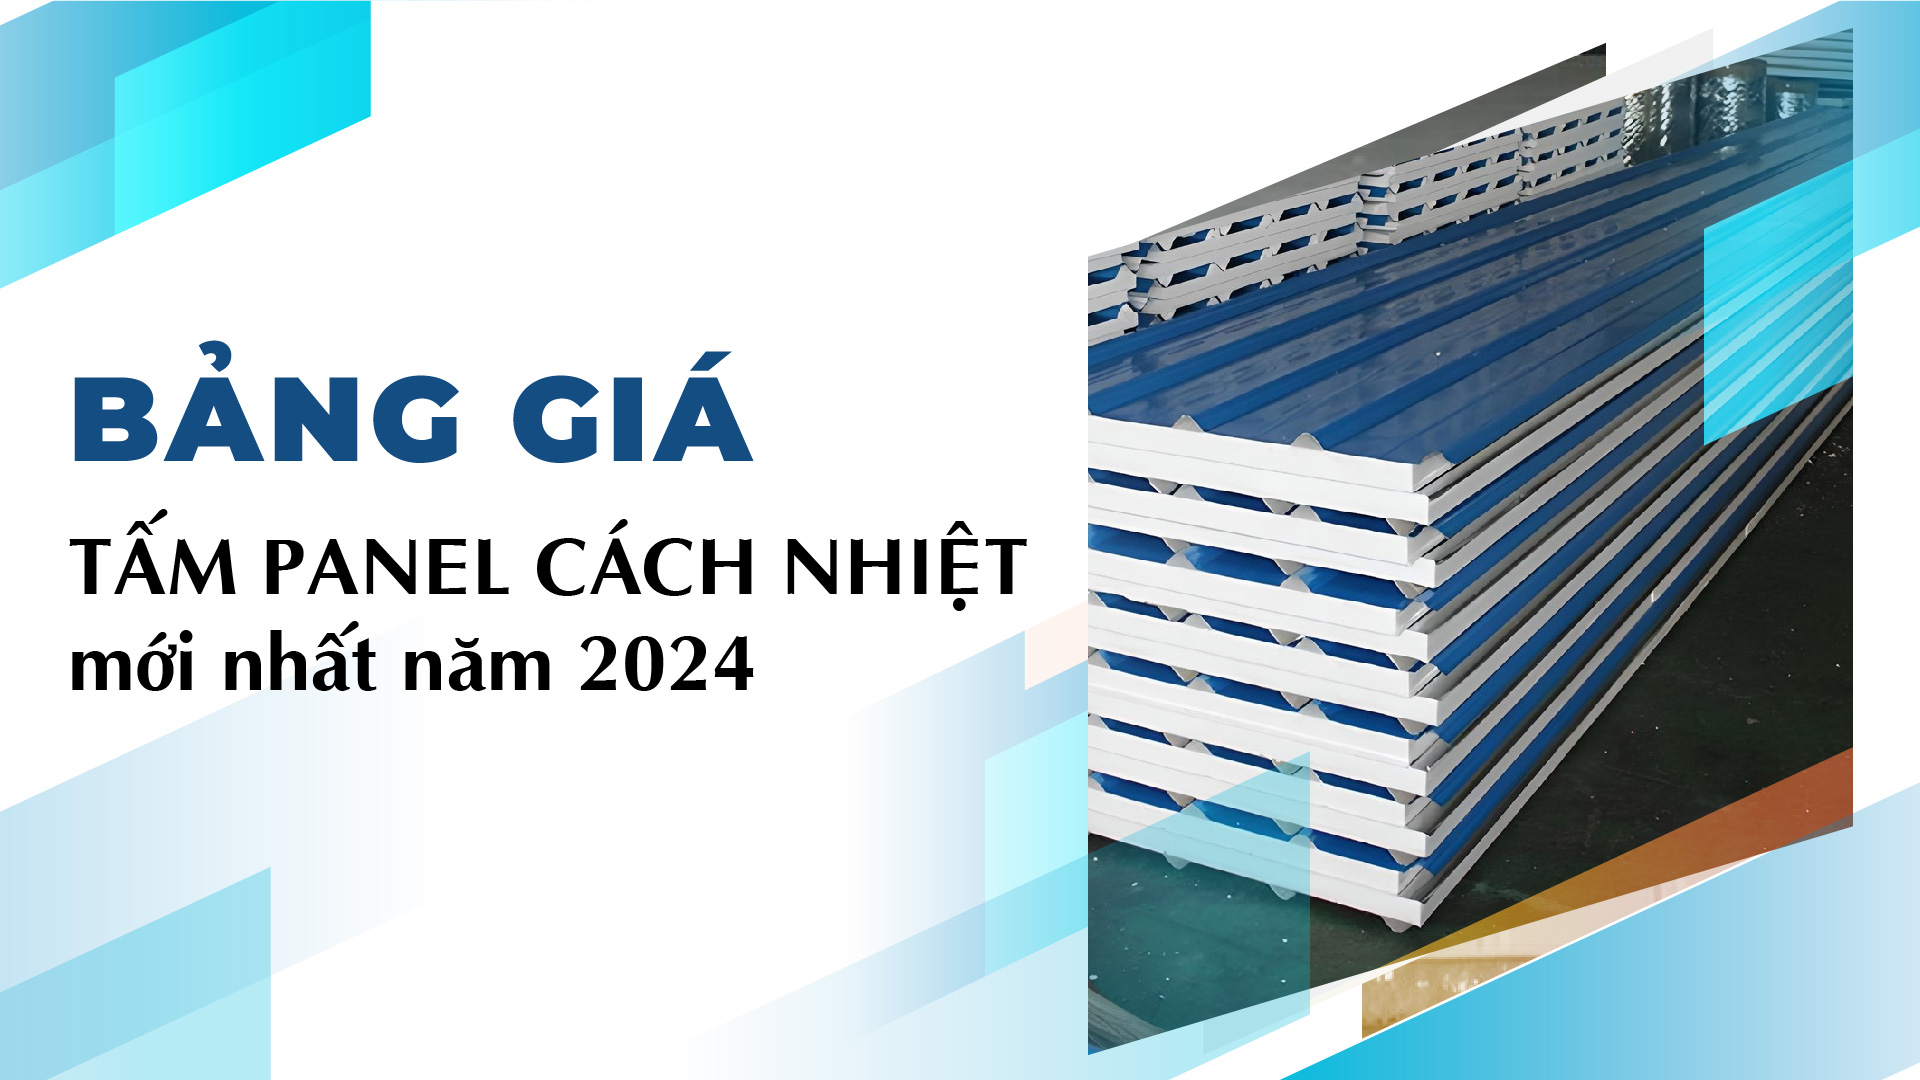 Bang-gia-tam-panel-cach-nhiet-moi-nhat-nam-2024